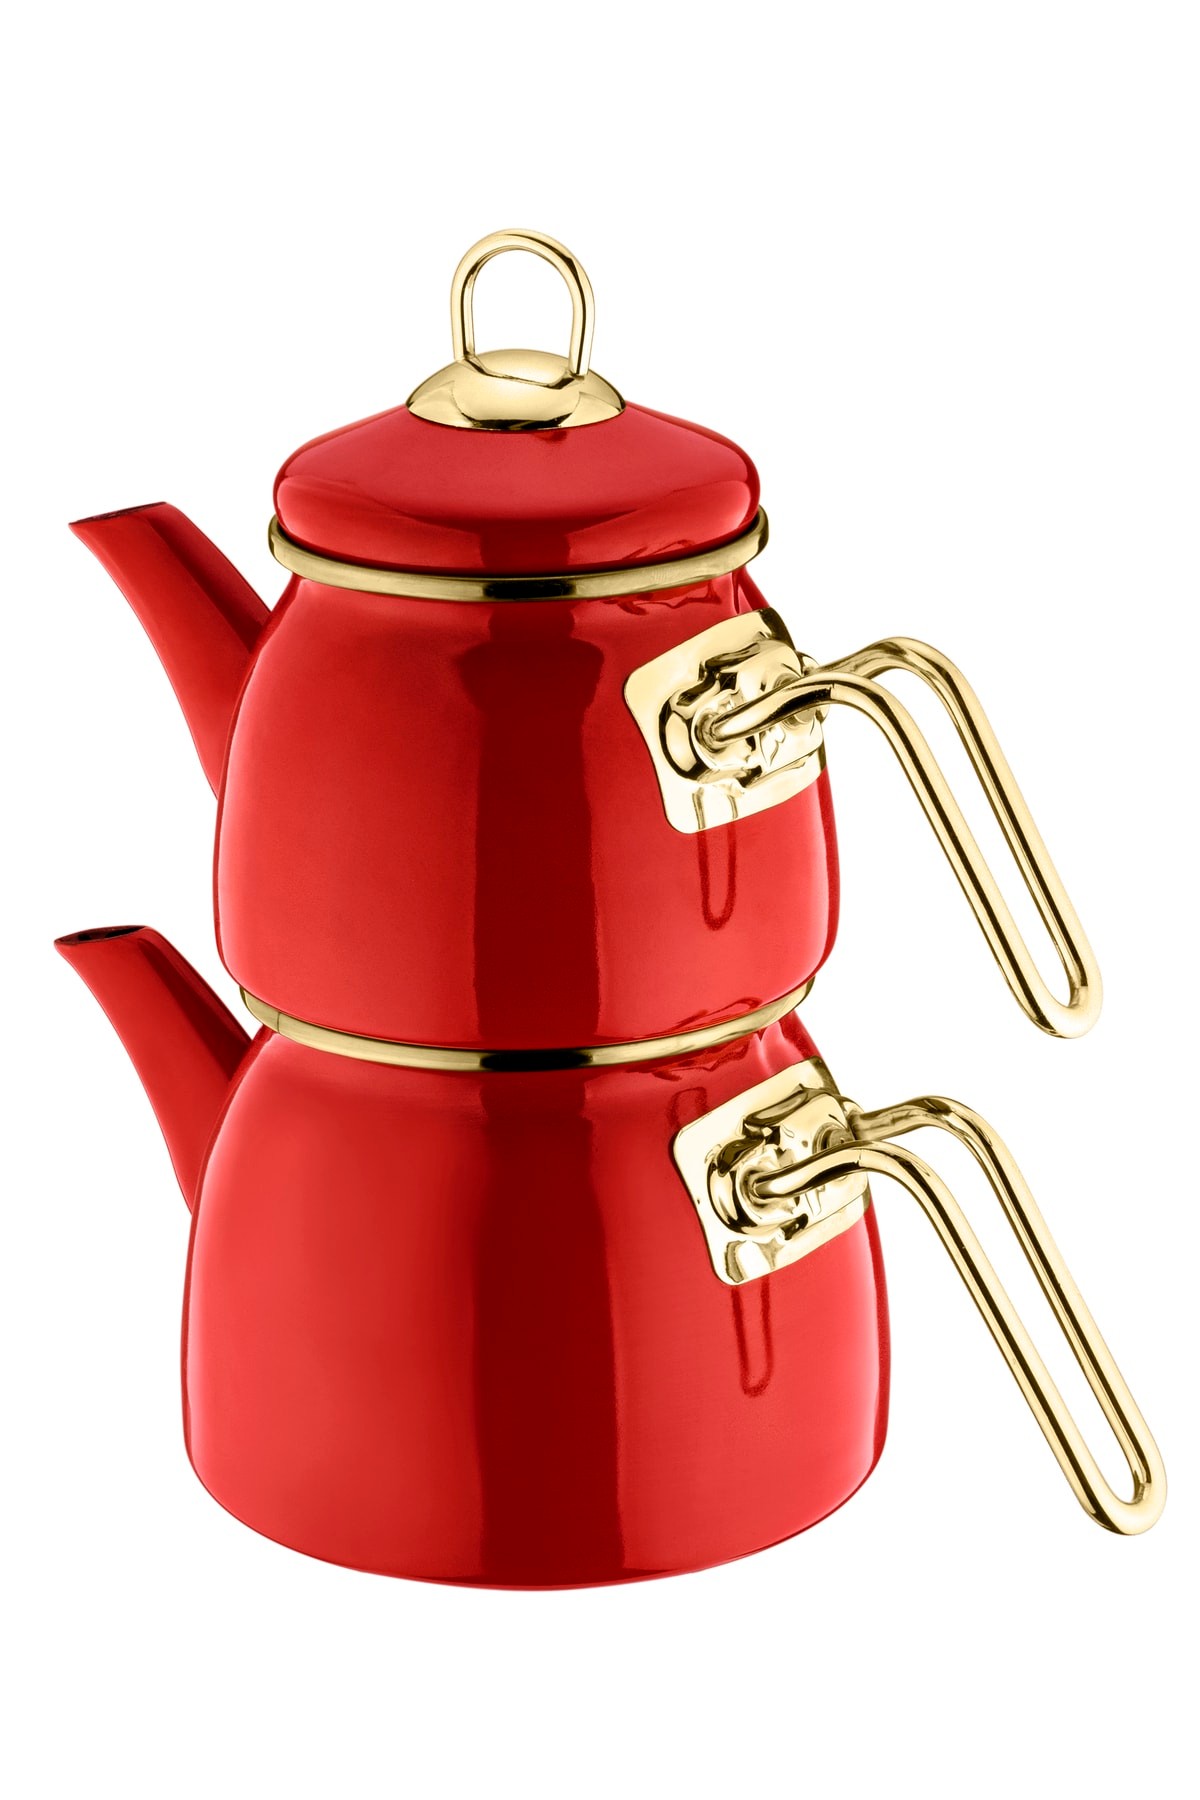 Sultan Mini - Çaydanlık Takımı Kırmızı